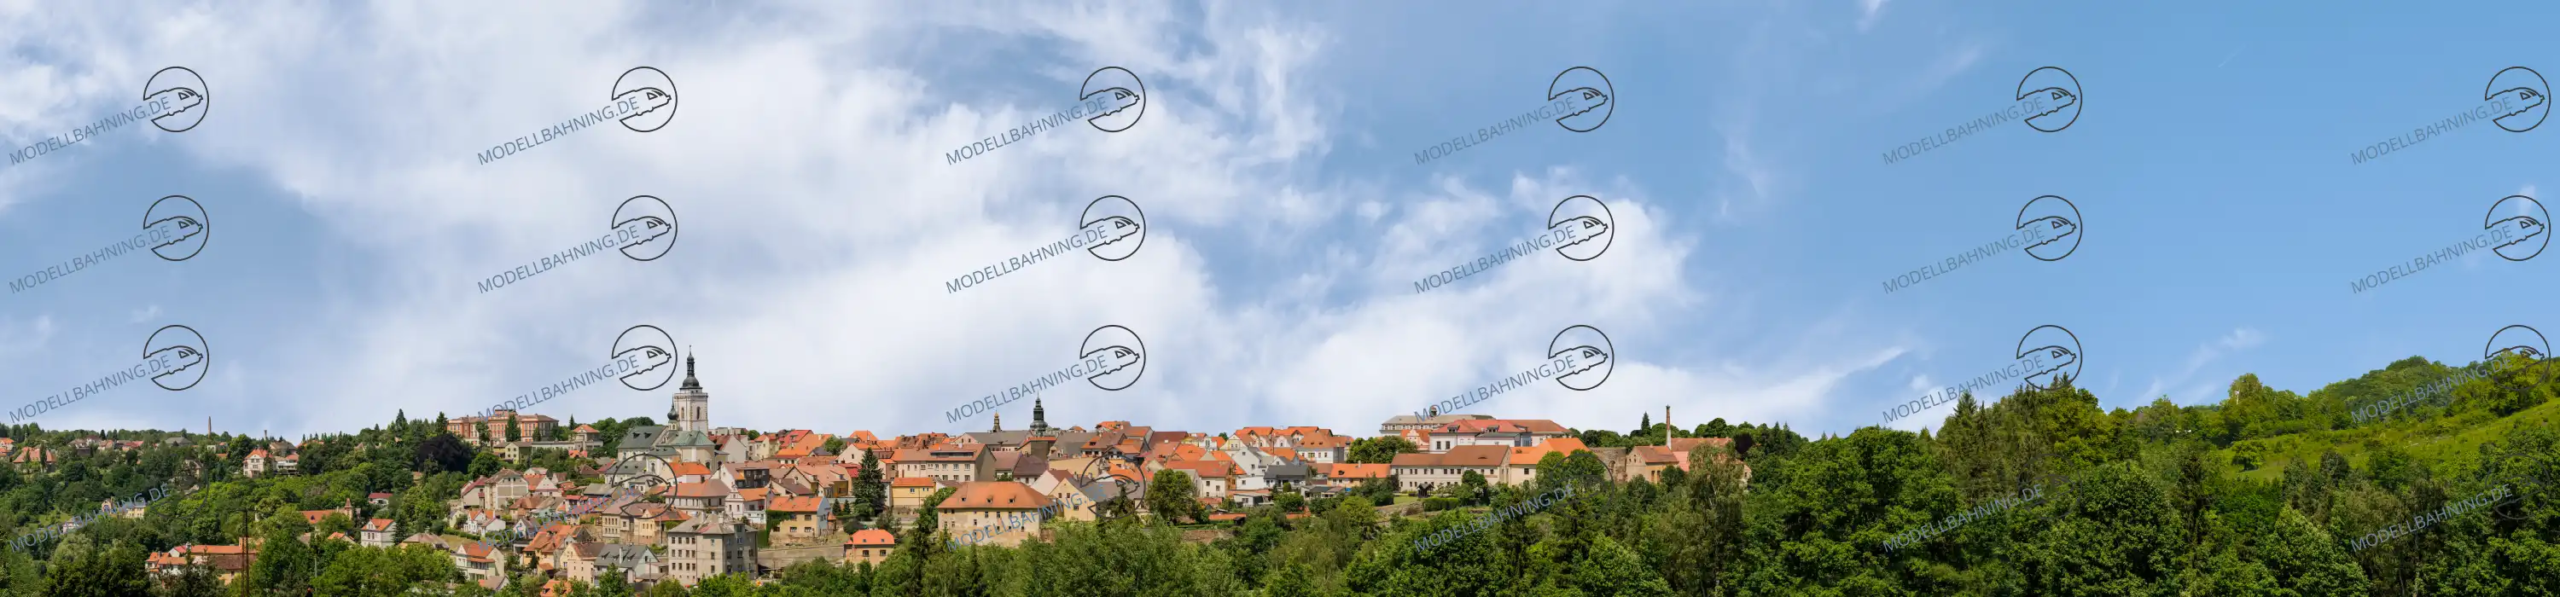 Modellbahn-Kulisse zeigt eine Kleinstadt, ähnlich DDR oder Osten